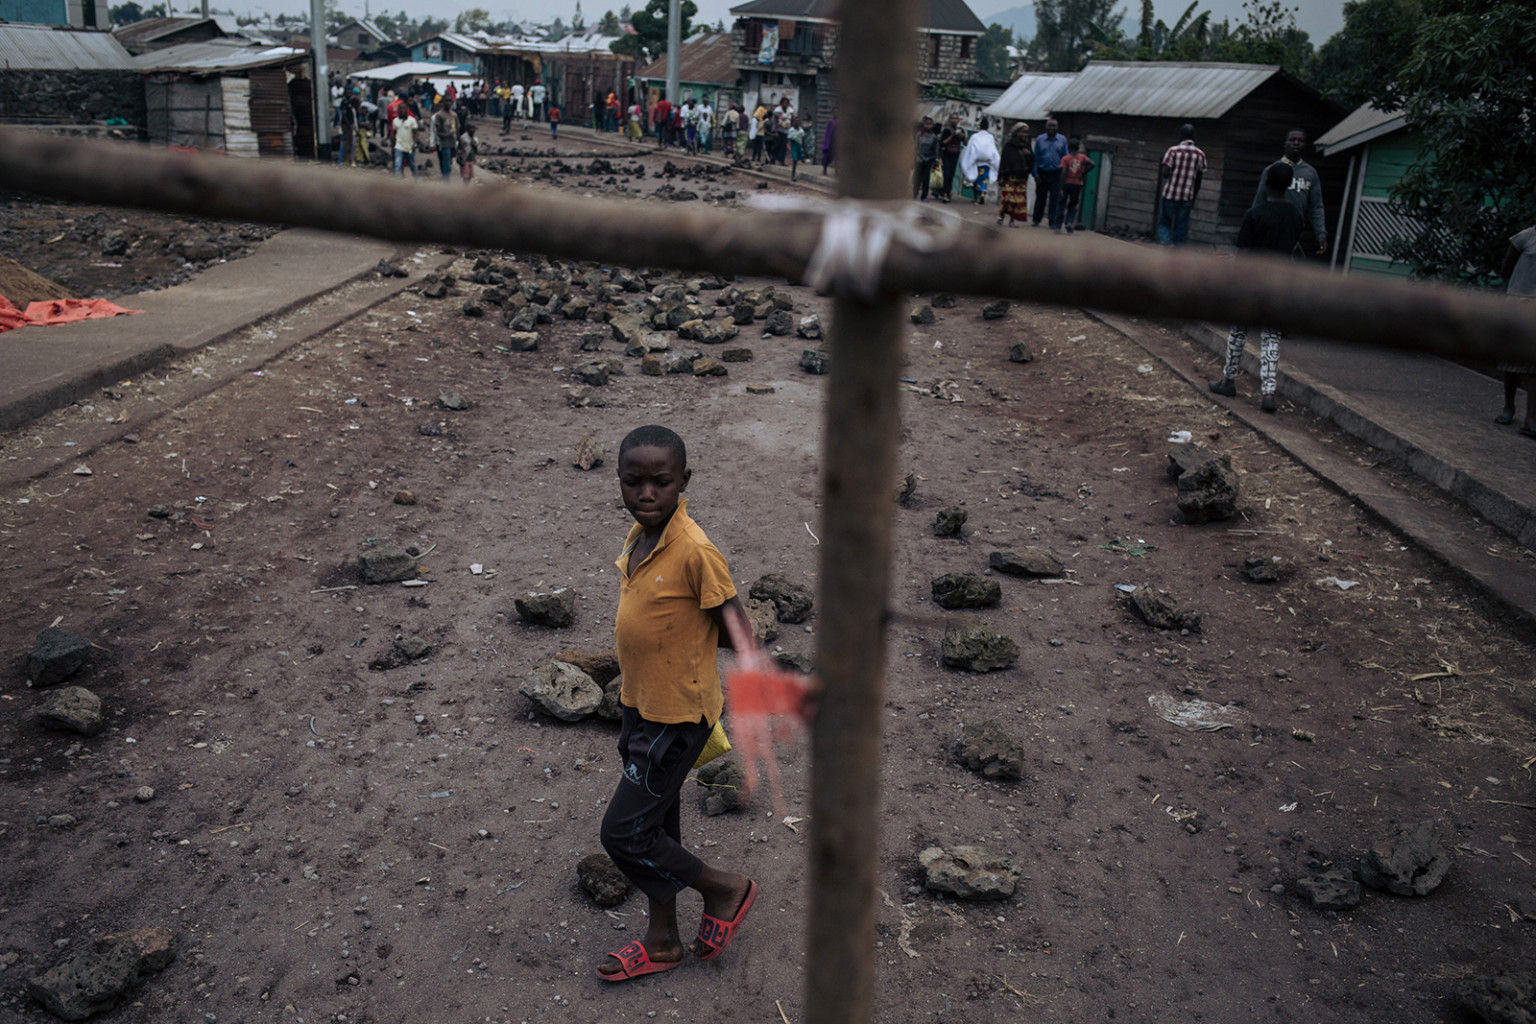   Một cậu bé vượt qua chướng ngại vật ở quận Kilijiwe phía bắc Goma ở miền đông Cộng hòa Dân chủ Congo vào ngày 24 tháng 7. Cư dân rào chắn đường, làm tê liệt mọi hoạt động để phản đối cái chết của bốn người, trong đó có hai thanh thiếu niên, bị giết bởi những tên cướp có vũ trang.  